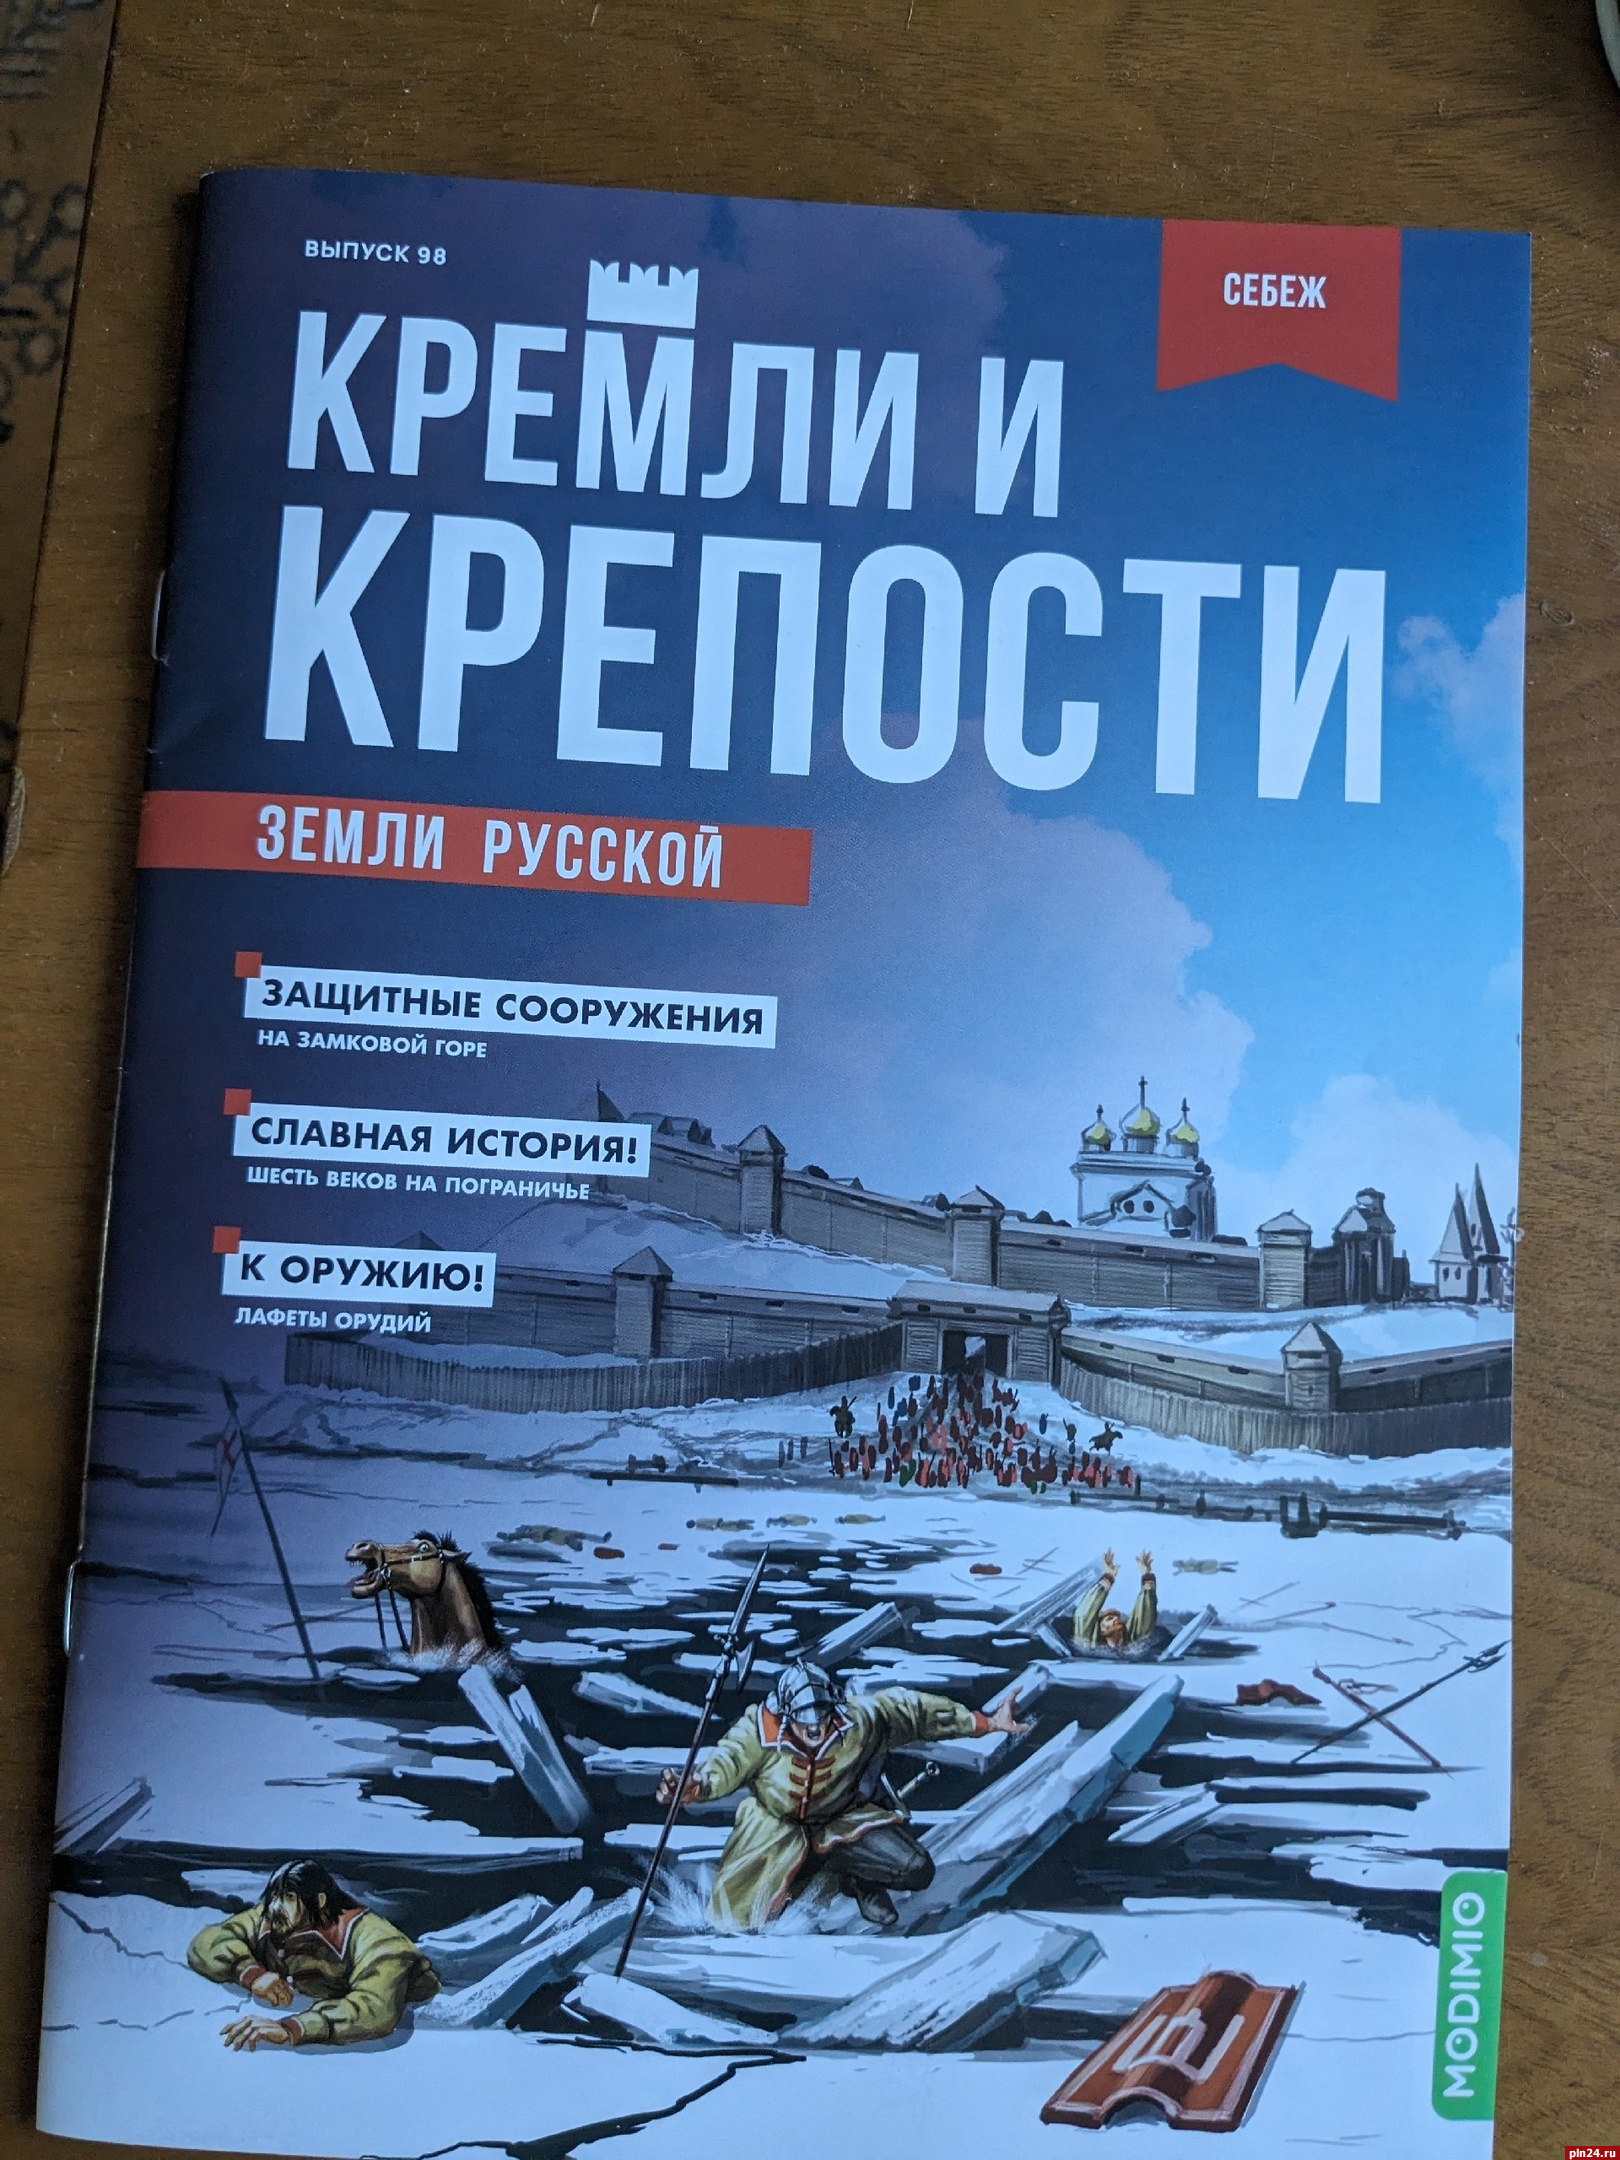 Журнал «Кремли и крепости» расскажет о защитных сооружениях в Себеже